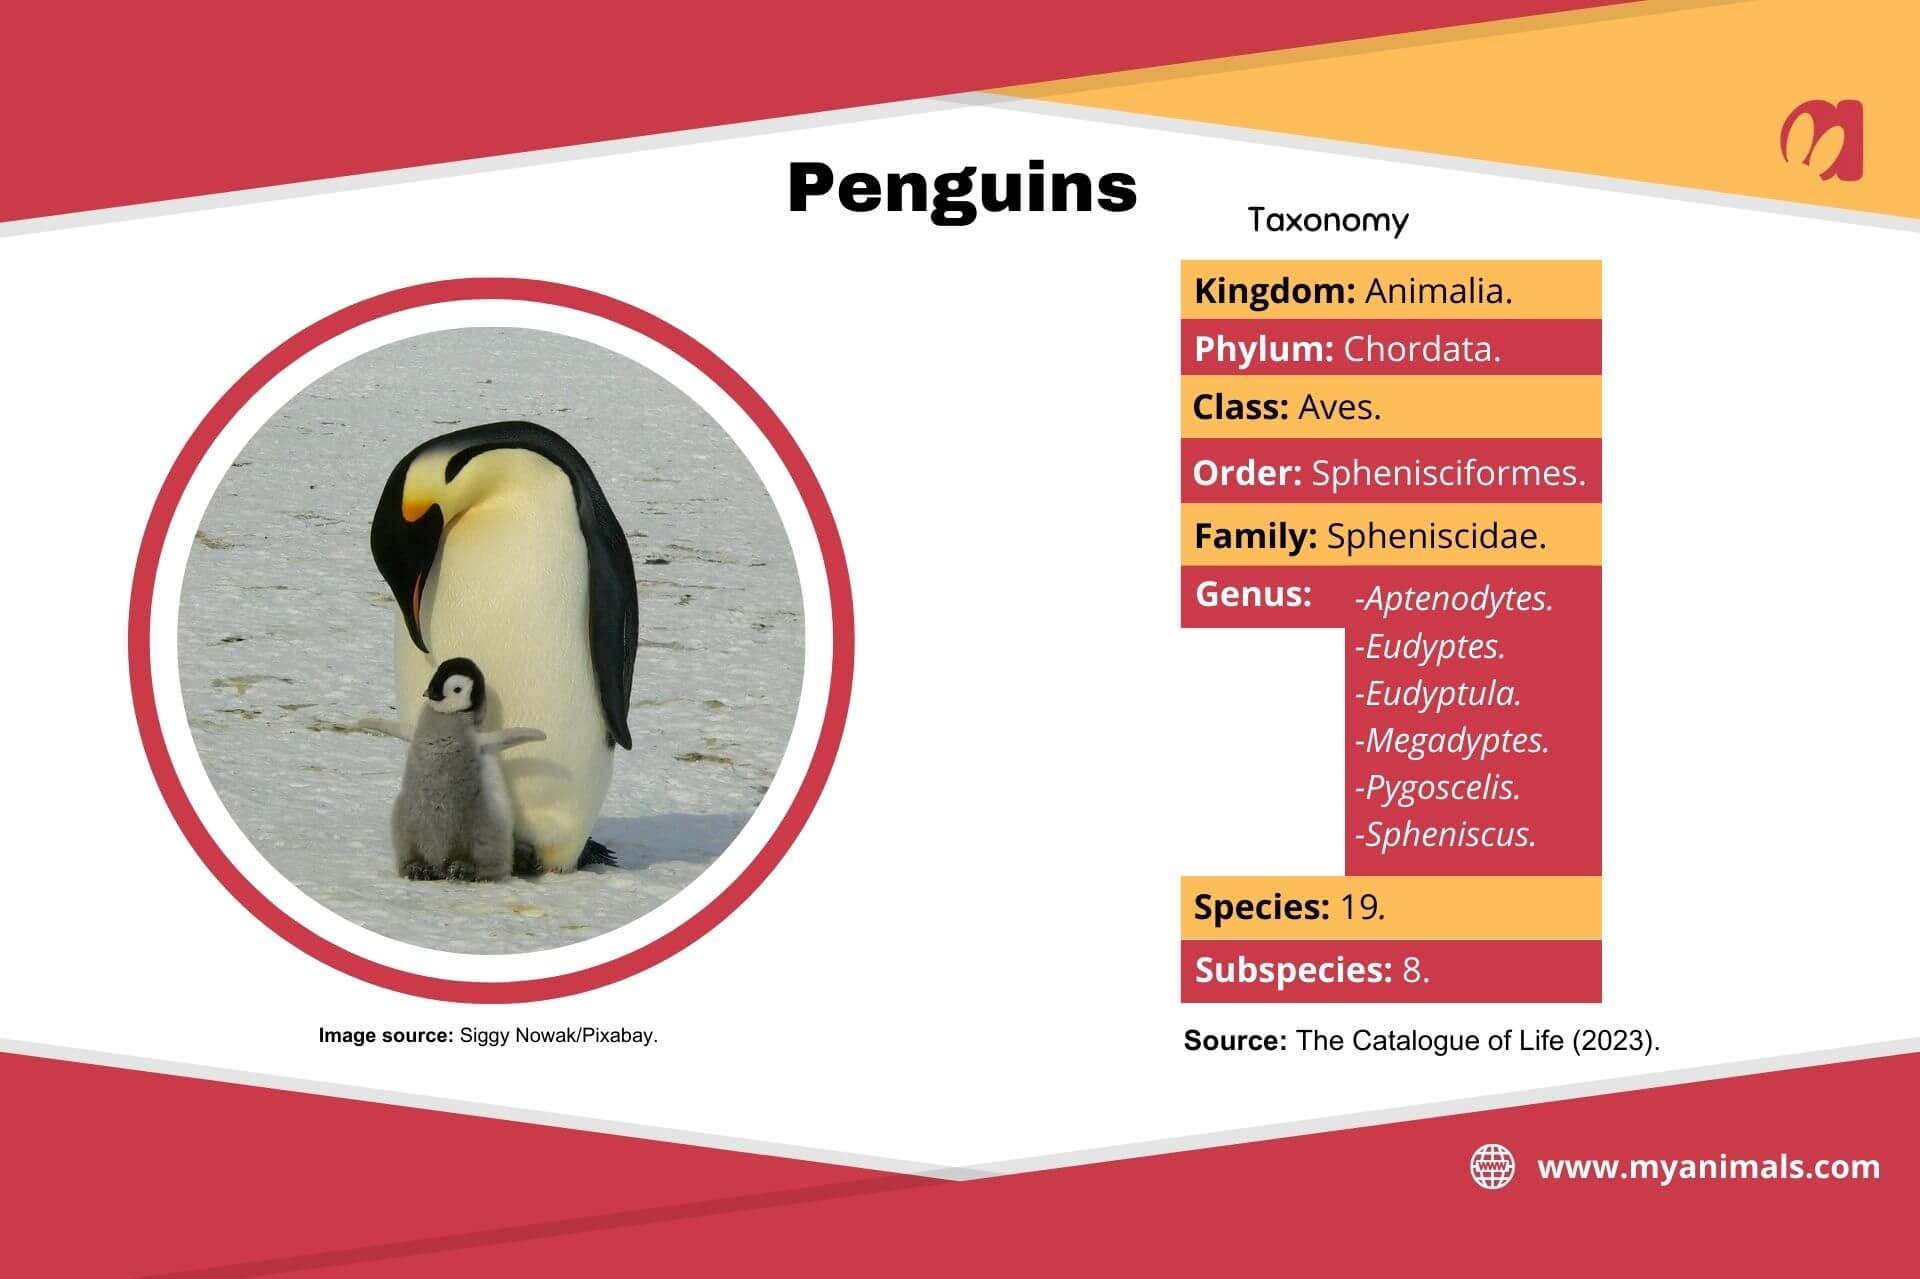 Information on penguins.